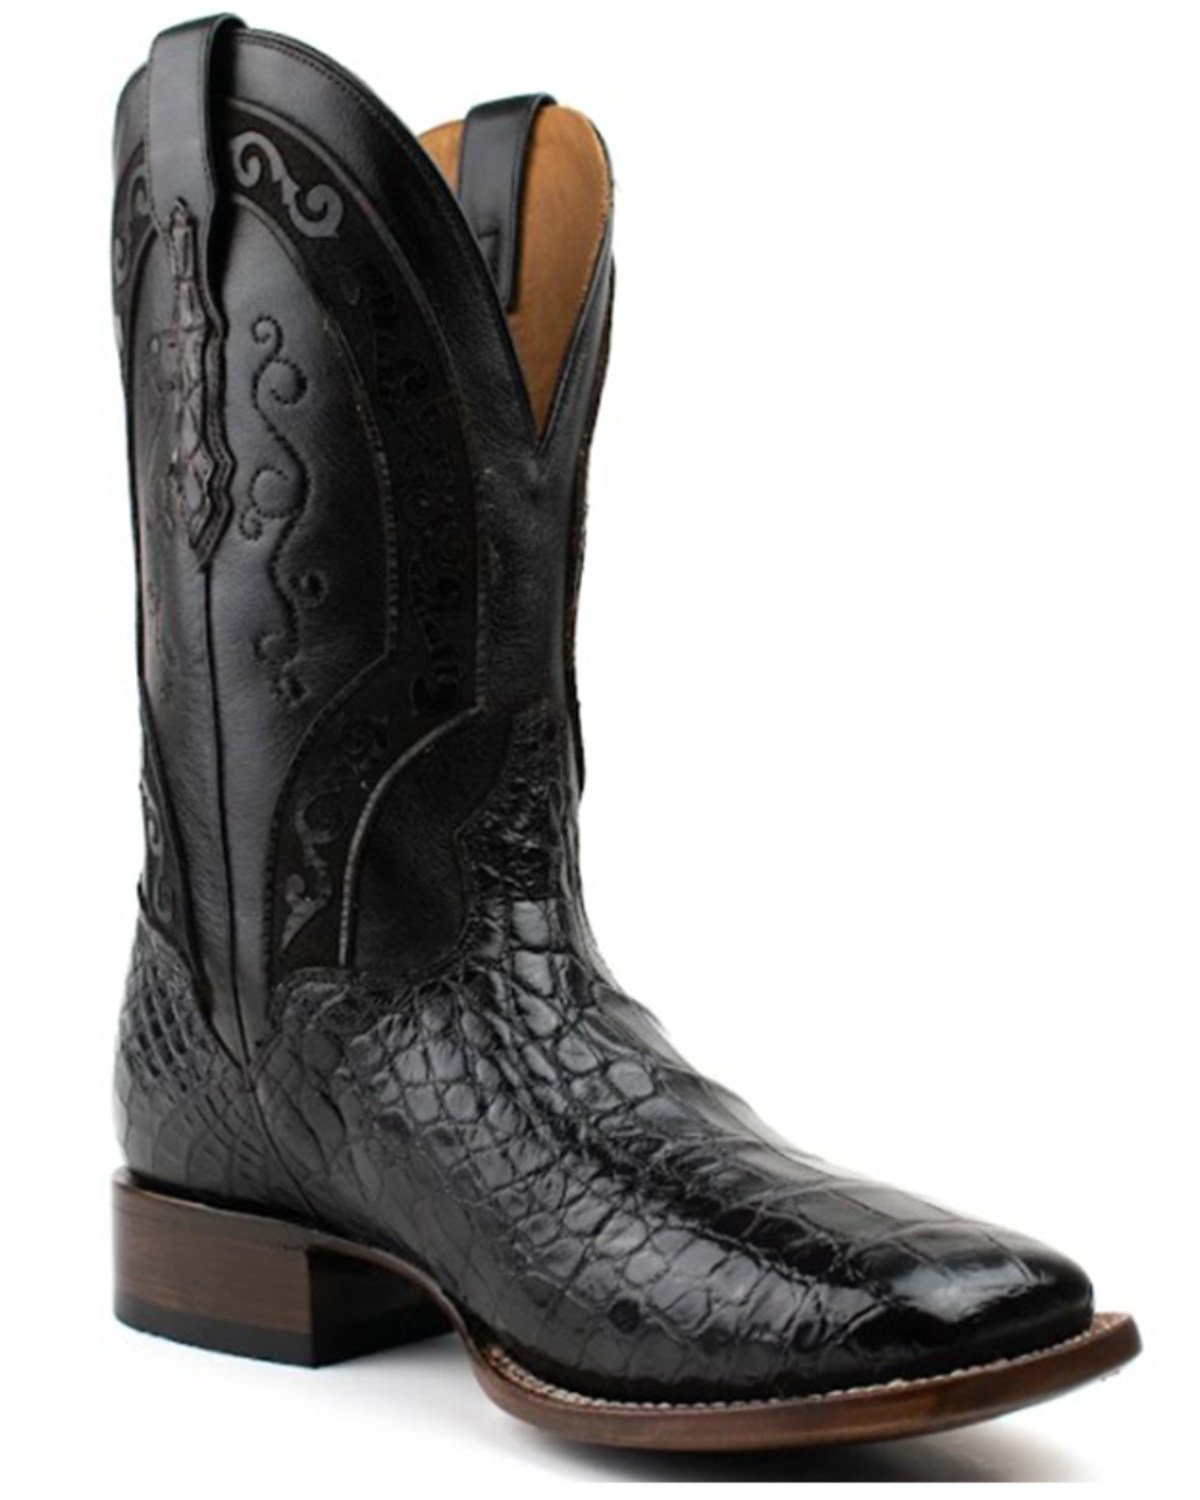 El Dorado Men's American Alligator Exotic Western Boots